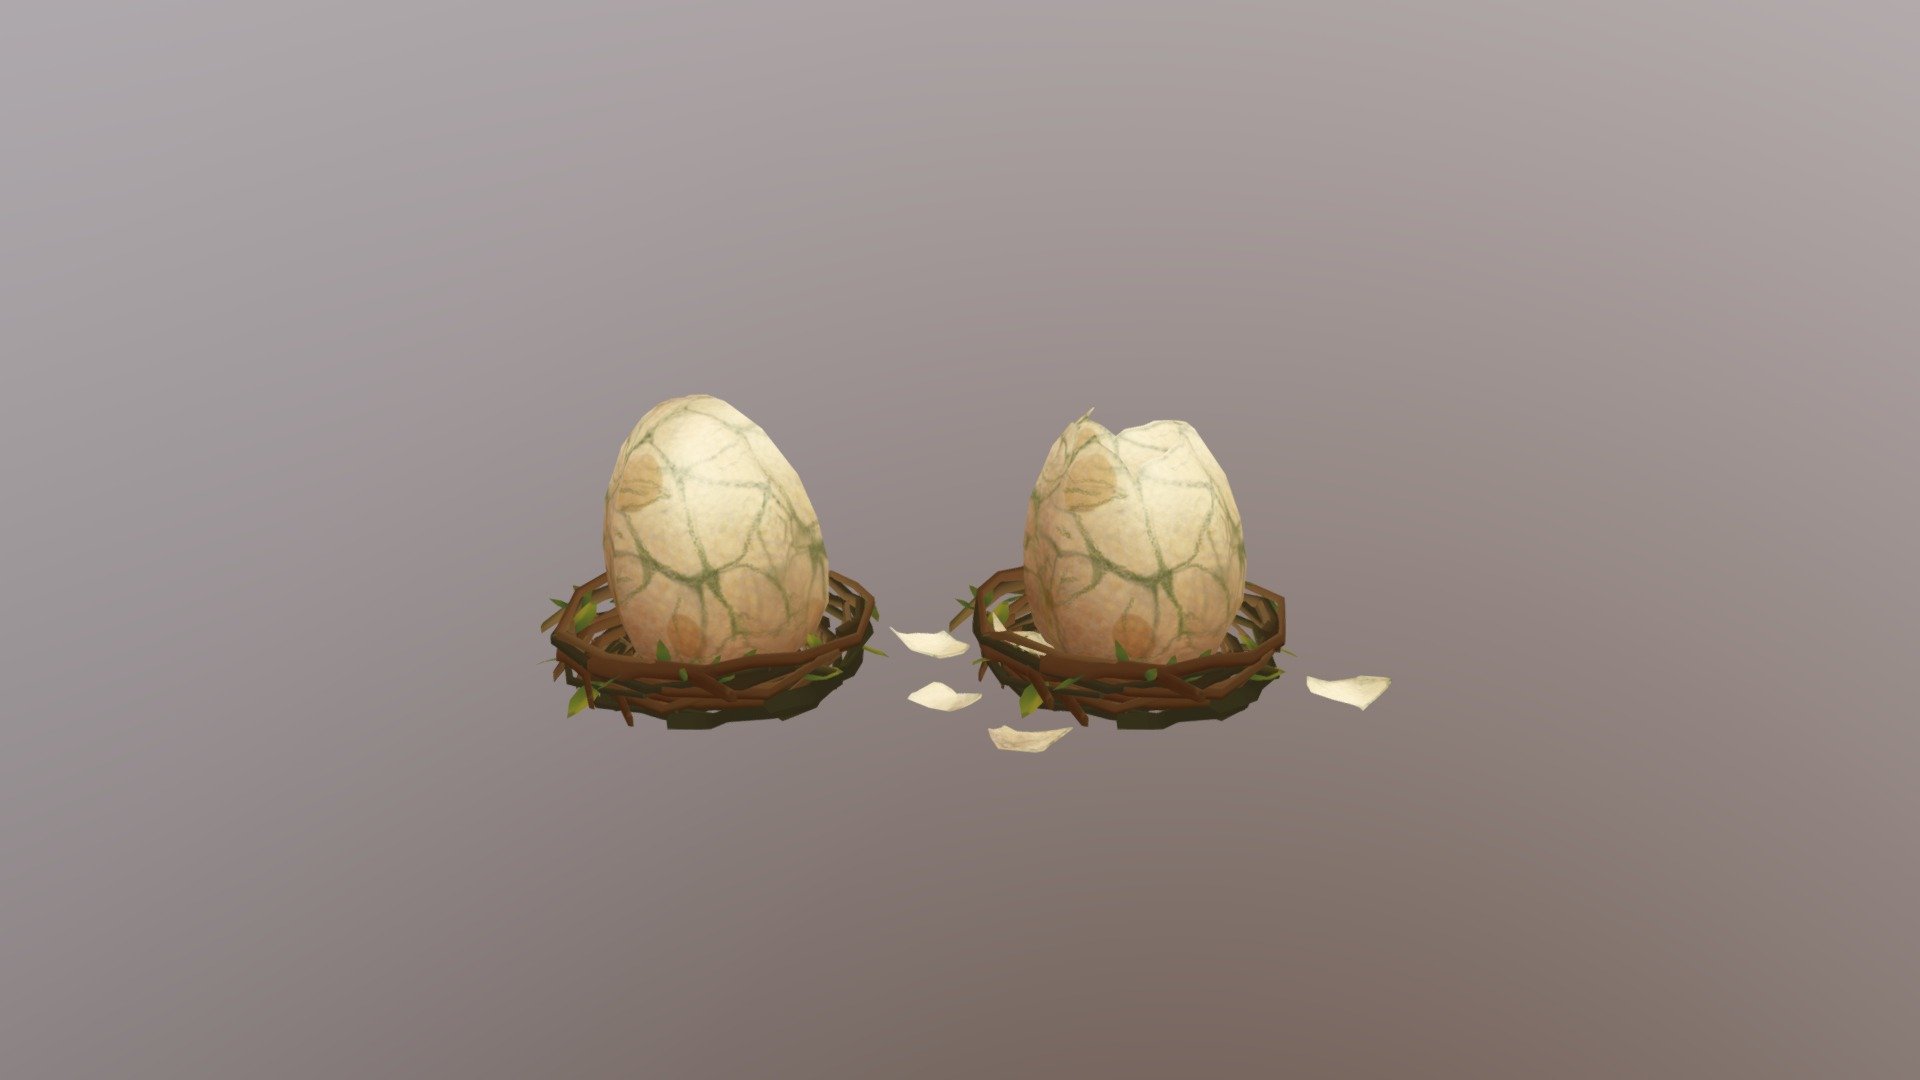 Low Poly for game - Egg Nest - 3D model by Vladiviriy 3d model